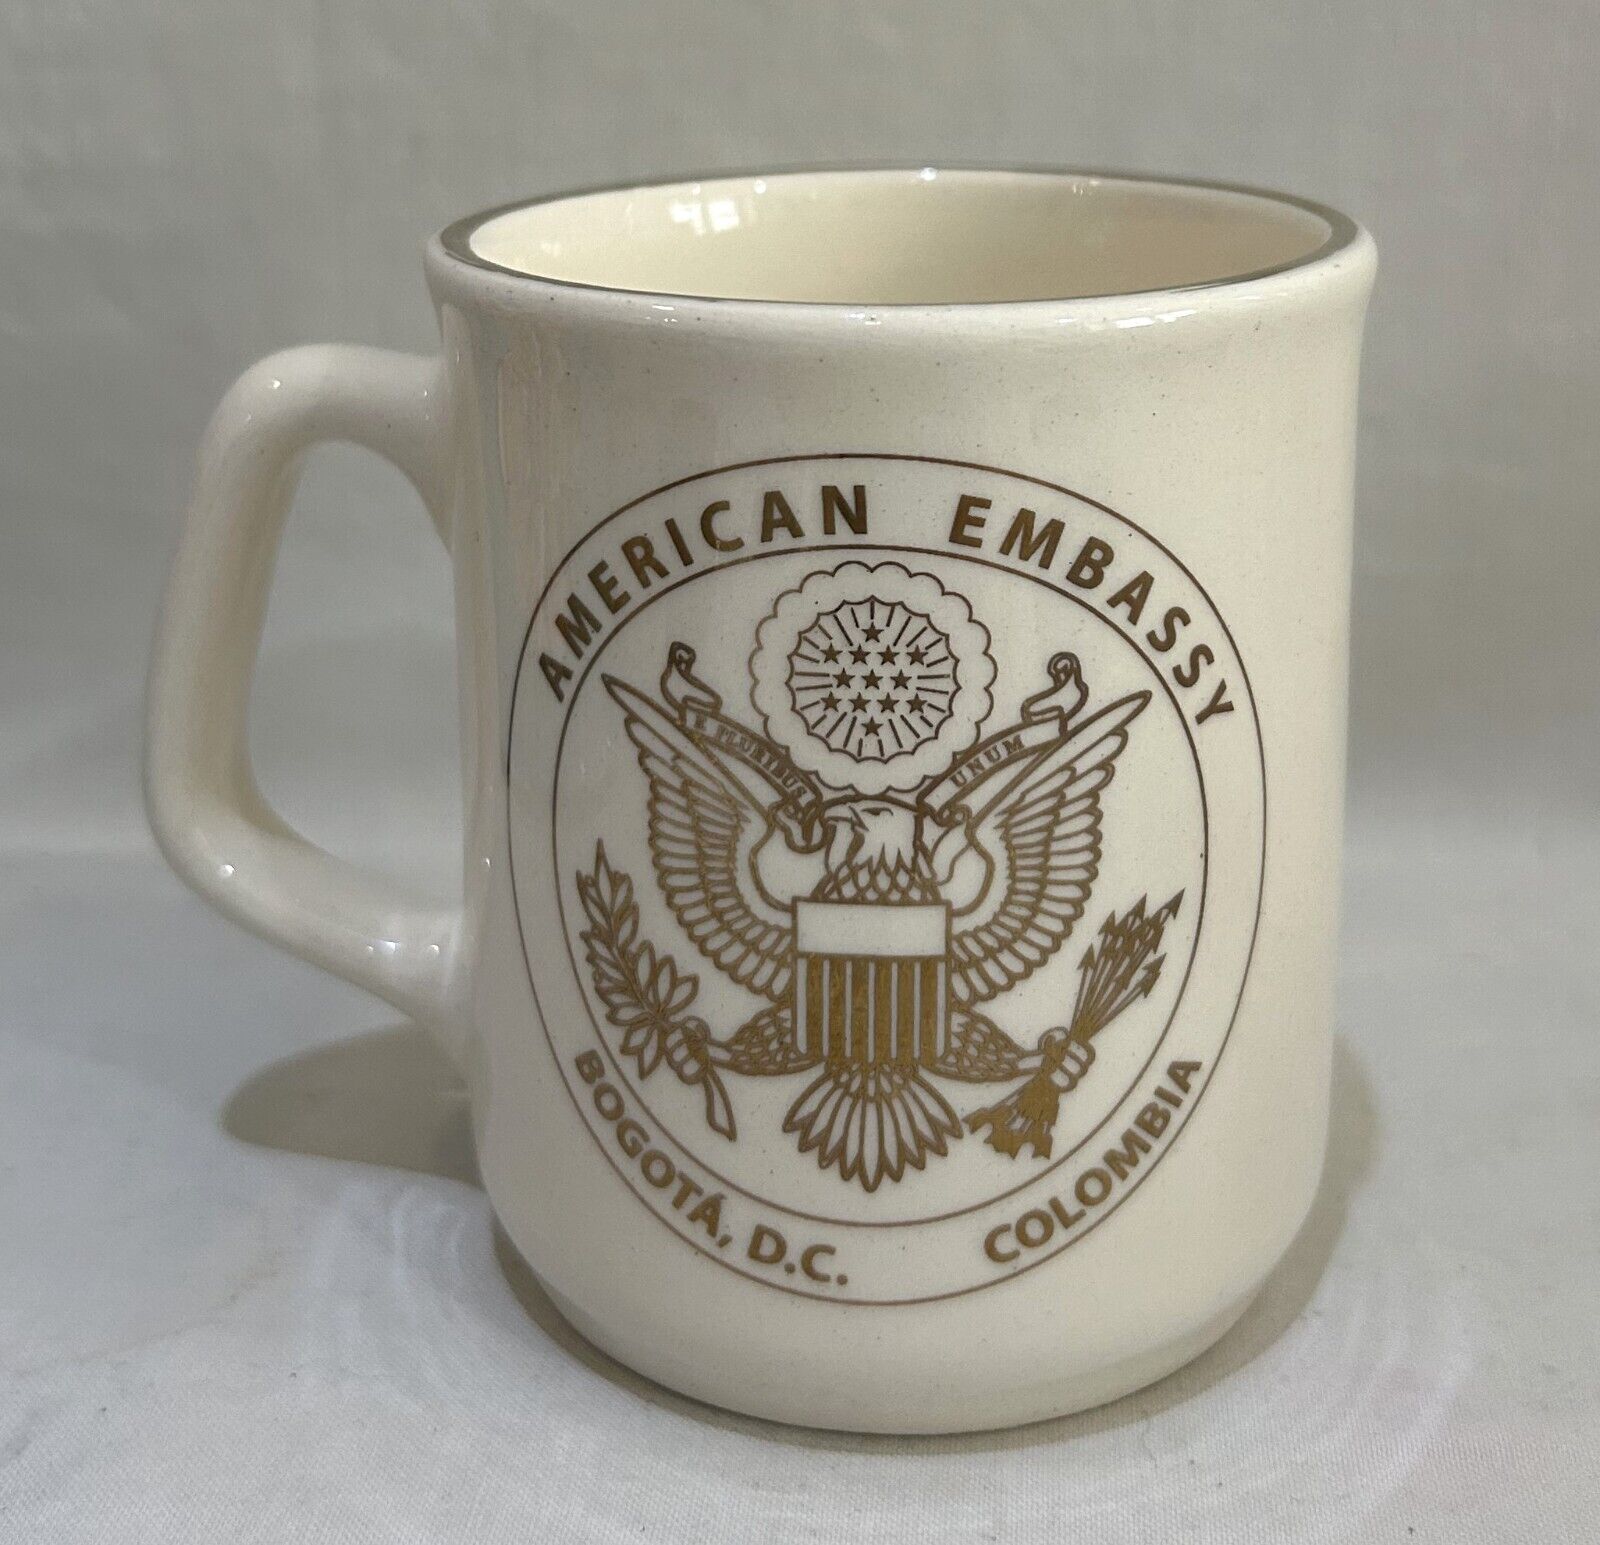 American Embassy to Bogota Colombia VTG Ceramic Mug Ivory Color Gold Crest 8 oz